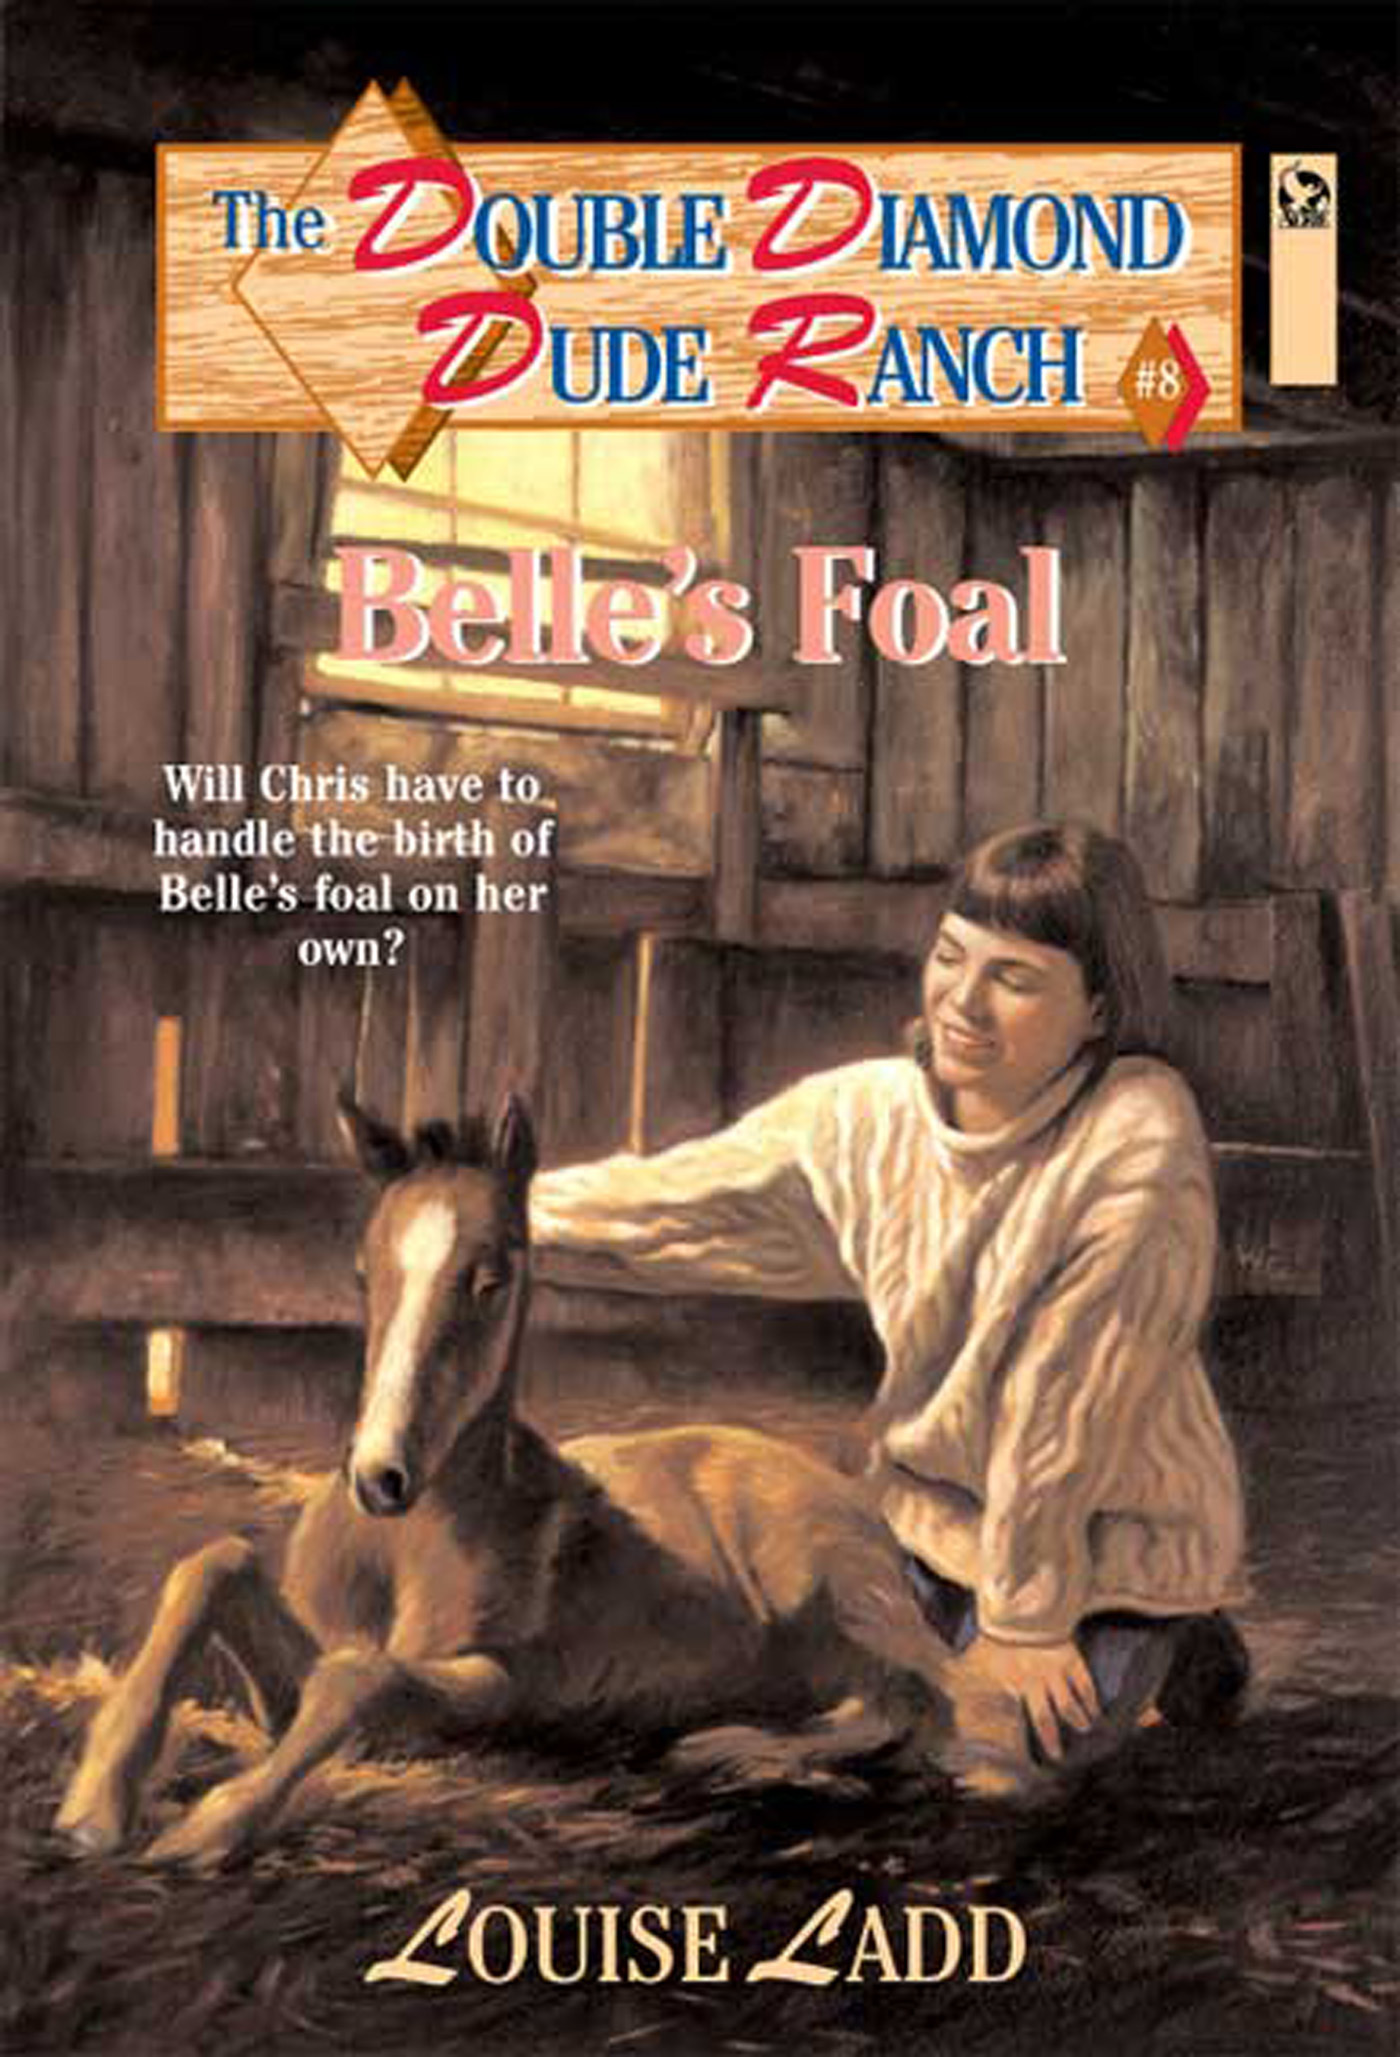 Double Diamond Dude Ranch #8 - Belle's Foal by Louise Ladd